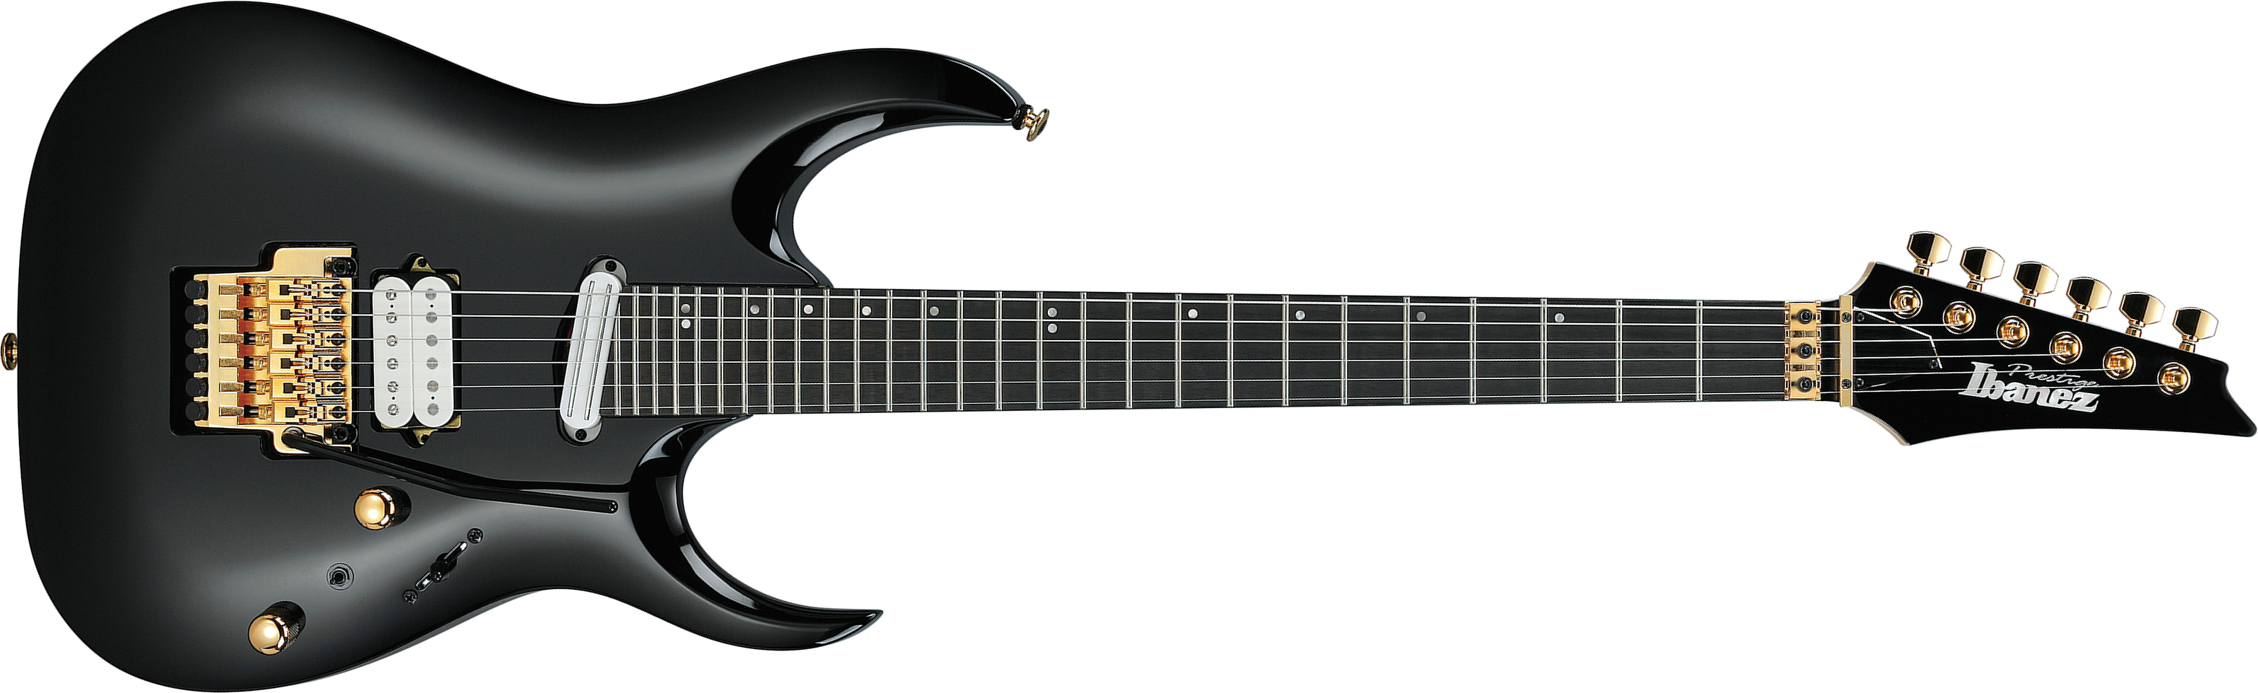 Ibanez Rga622xh Bk Prestige Jap 2h Dimarzio Fr Eb - Black - Guitarra eléctrica con forma de str. - Main picture